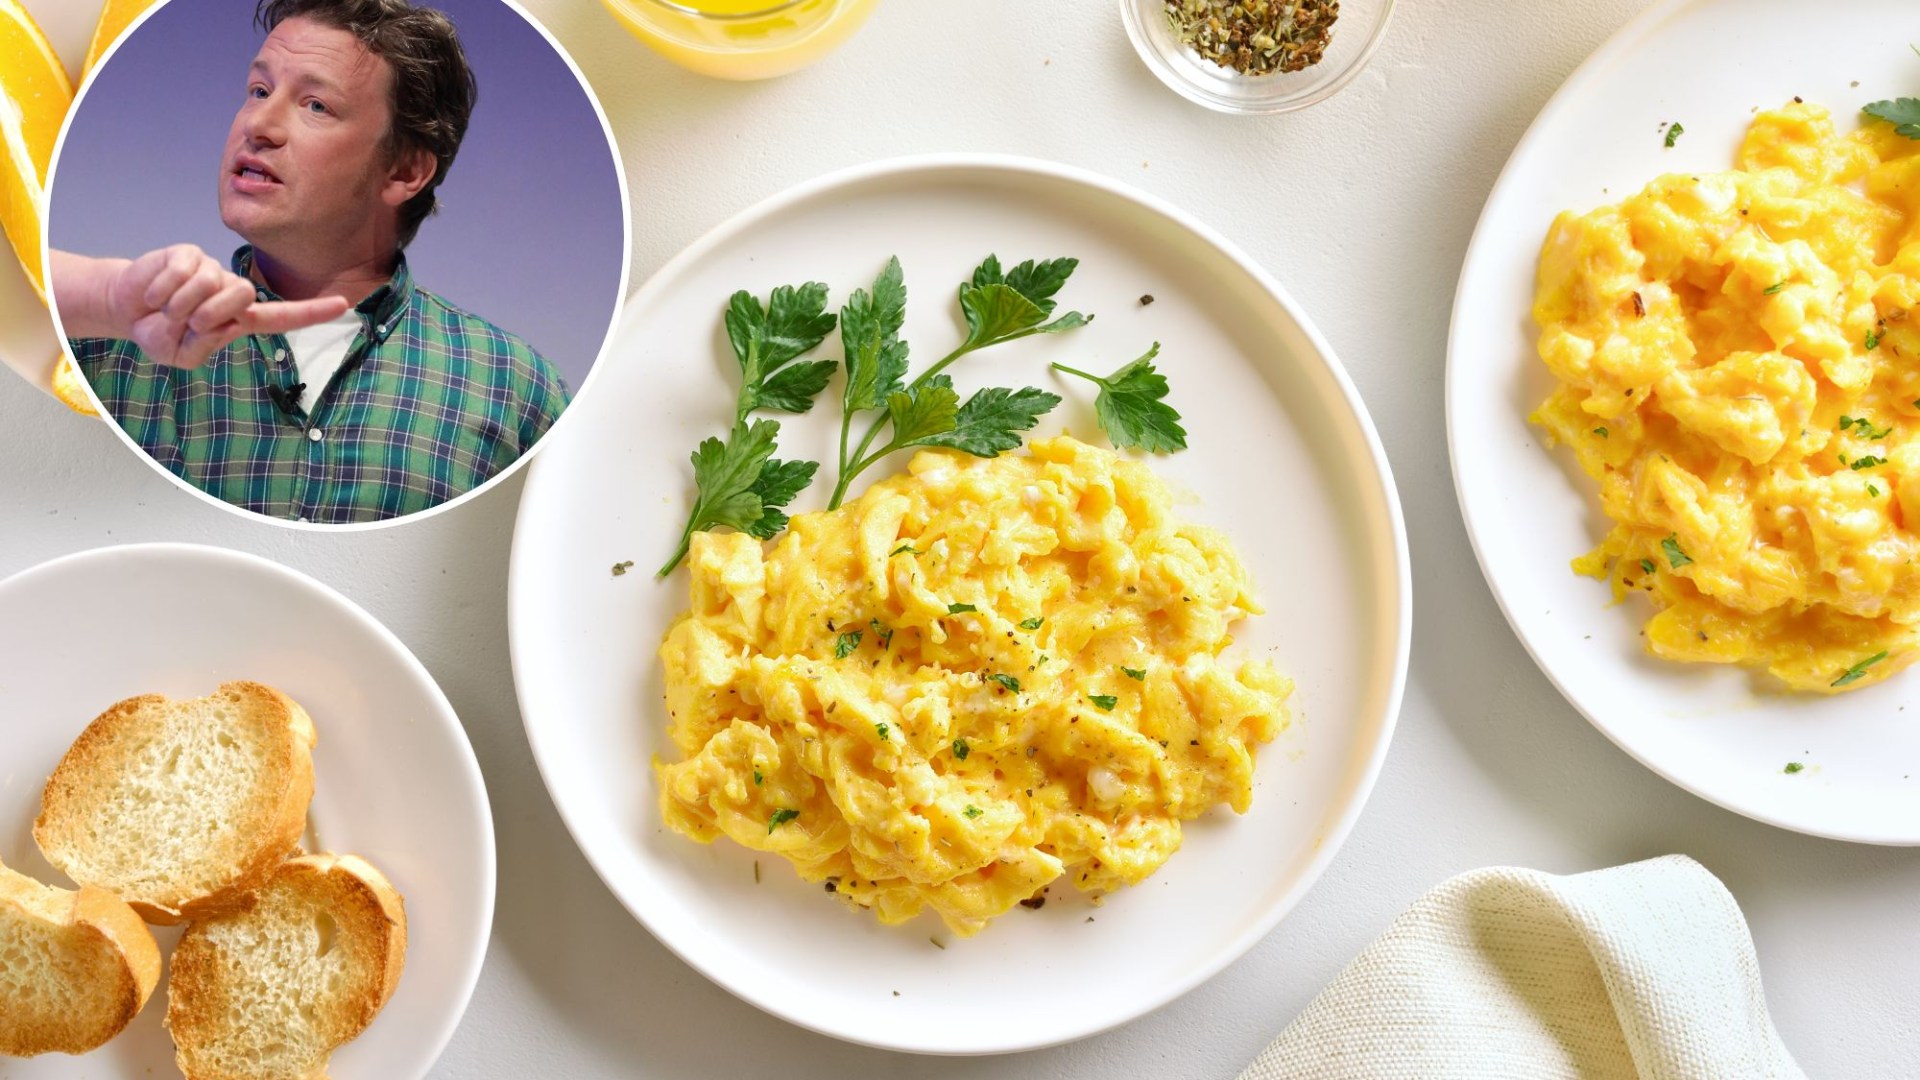 Jamie Oliver dit que nous cuisinons des œufs brouillés de manière totalement erronée : vous n'avez pas besoin de lait ni de crème
